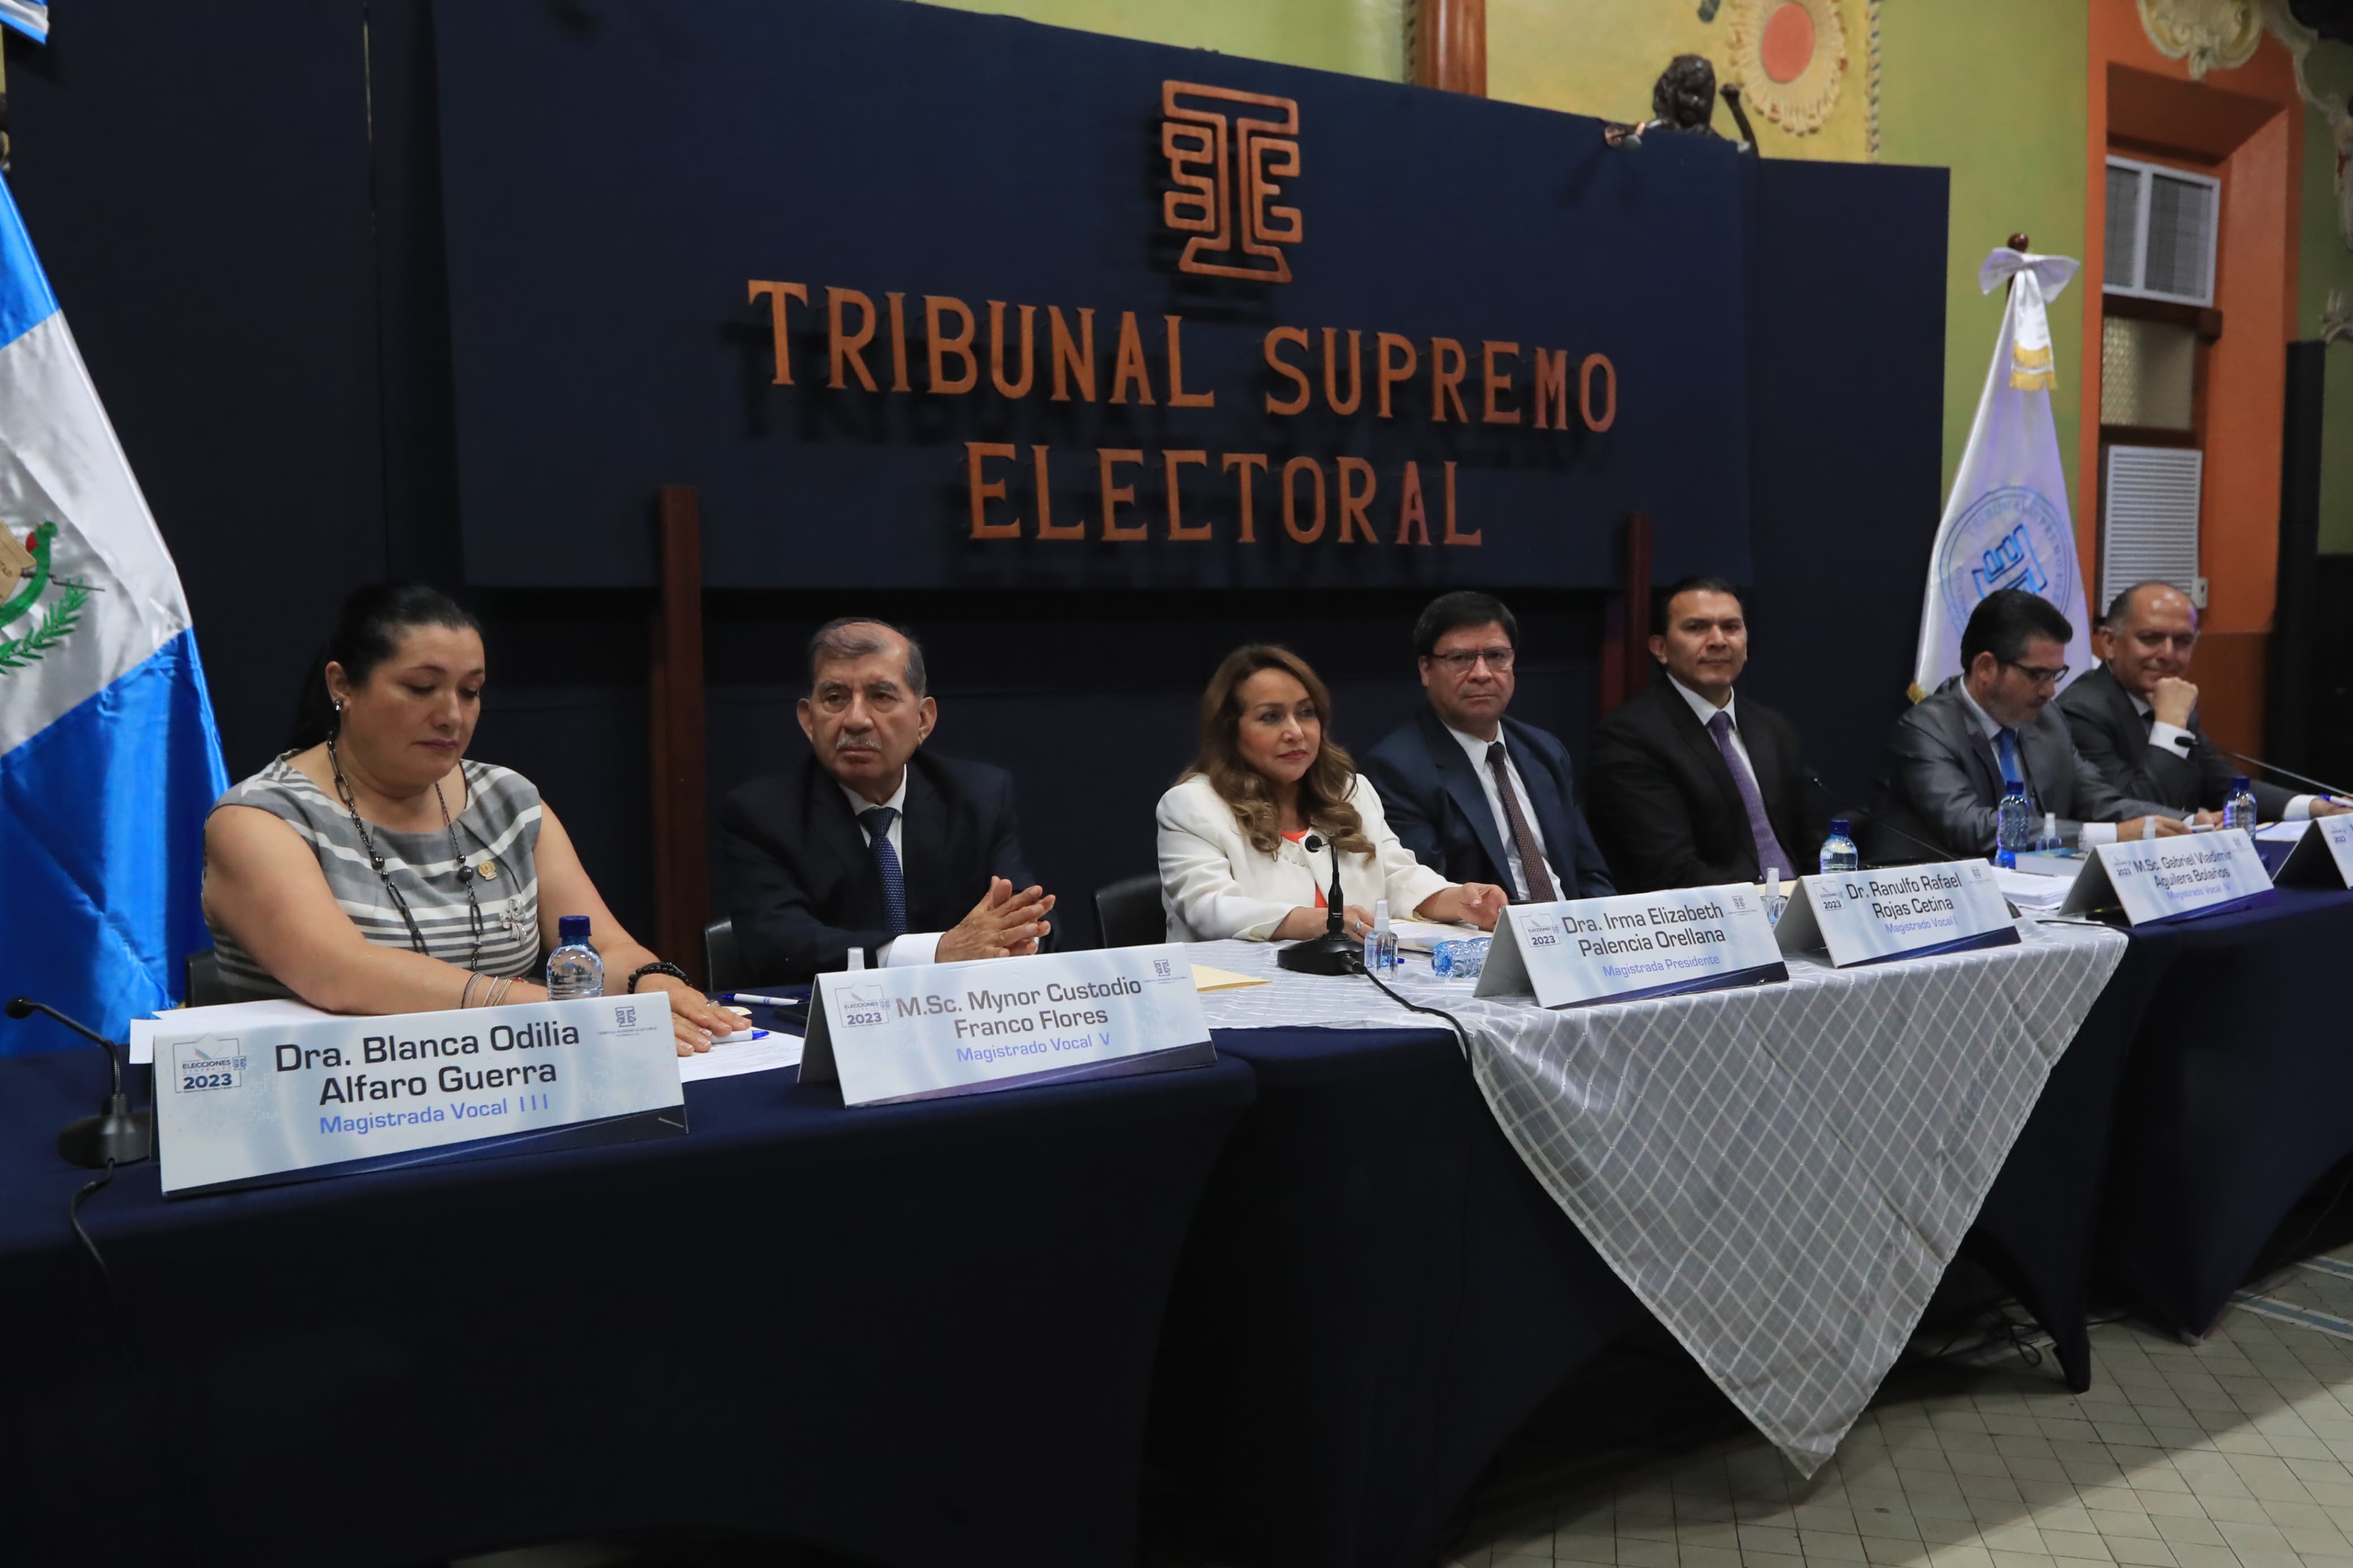 Los 48 Cantones de Guatemala y Alianza por las Reformas han presentado solicitudes por escrito pidiendo al pleno prorrogar la fecha. (Foto Prensa Libre: Élmer Vargas)